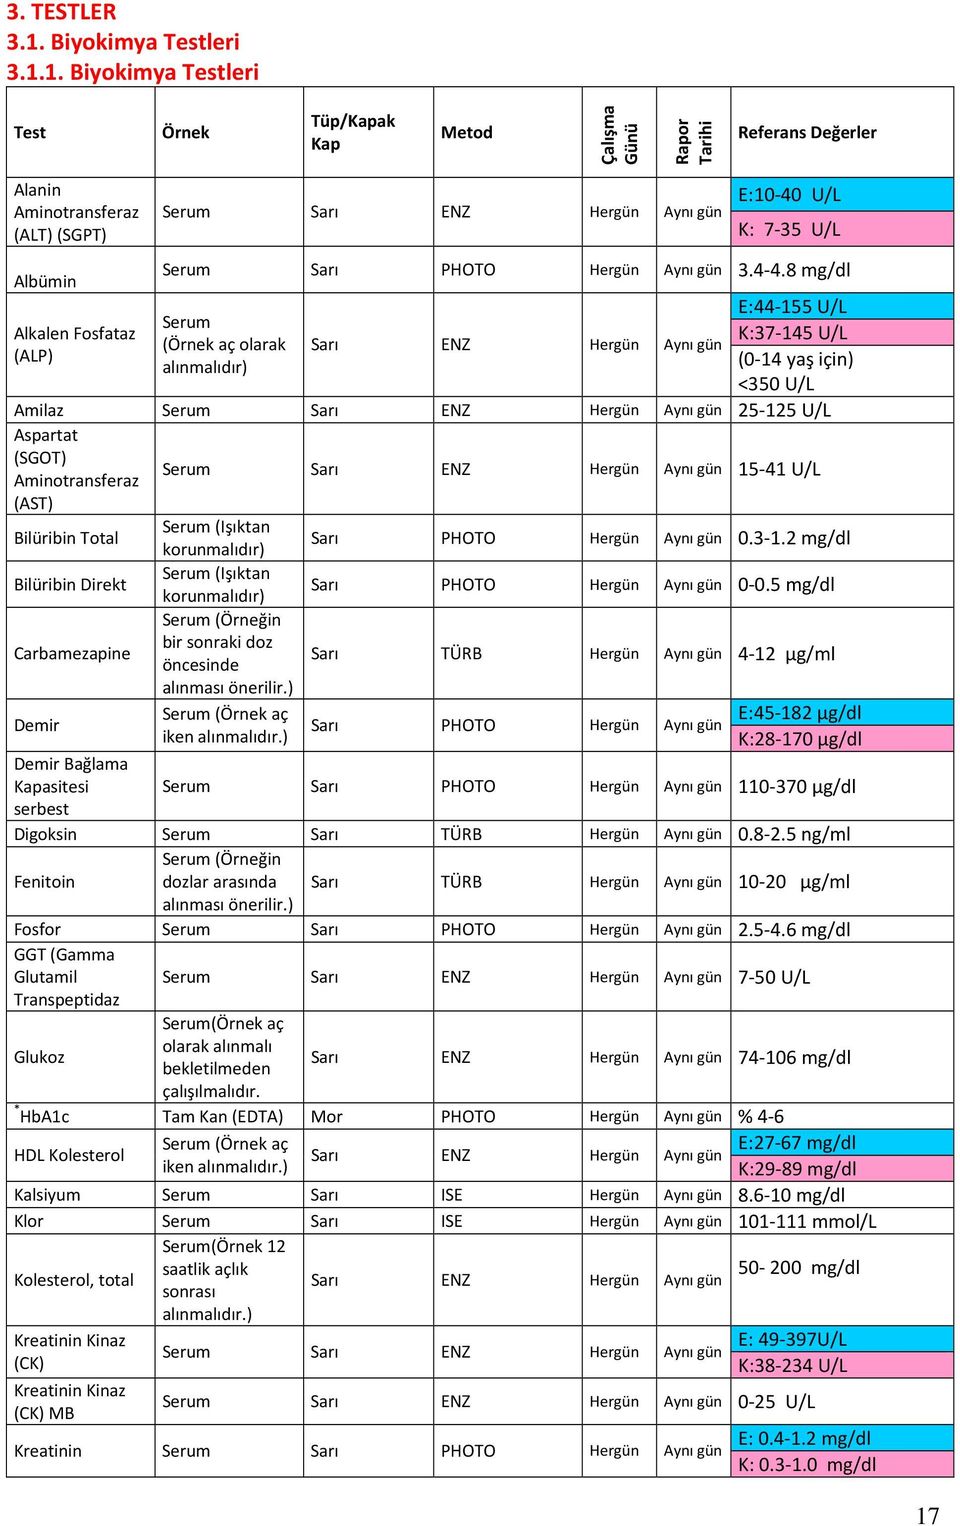 1. Biyokimya Testleri Test Örnek Tüp/Kapak Kap Metod Çalışma Günü Rapor Tarihi Referans Değerler Alanin Aminotransferaz (ALT) (SGPT) Serum Sarı ENZ Hergün Aynı gün E:10-40 U/L K: 7-35 U/L Albümin